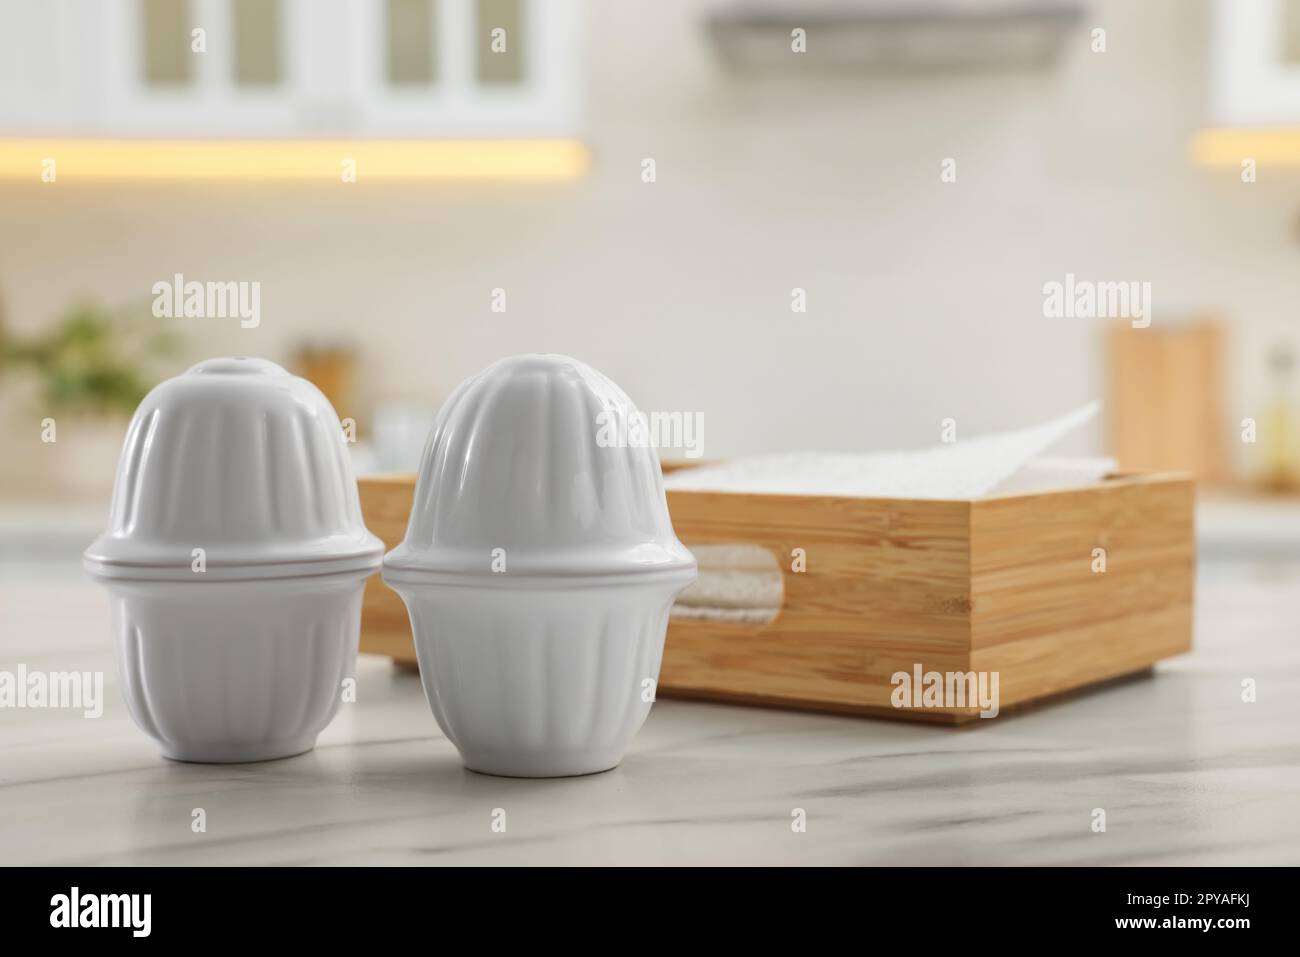 Keramiksalz- und Pfefferstreuer in der Nähe einer Serviettenschachtel auf einem weißen Marmortisch in der Küche. Platz für Text Stockfoto